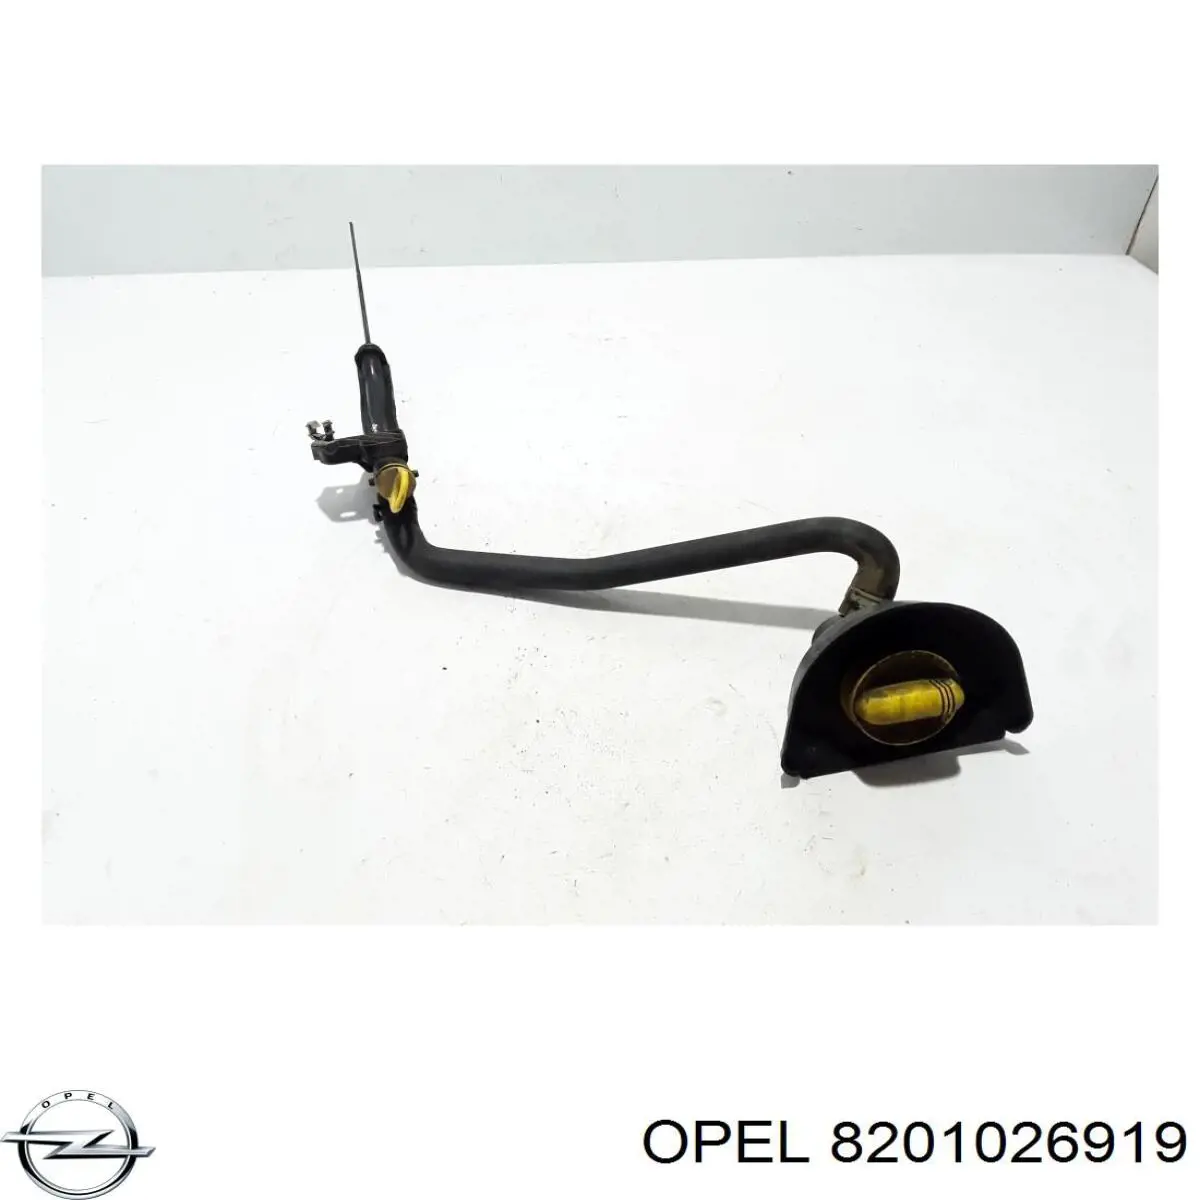 8201026919 Opel направляюча щупа-індикатора рівня масла в двигуні